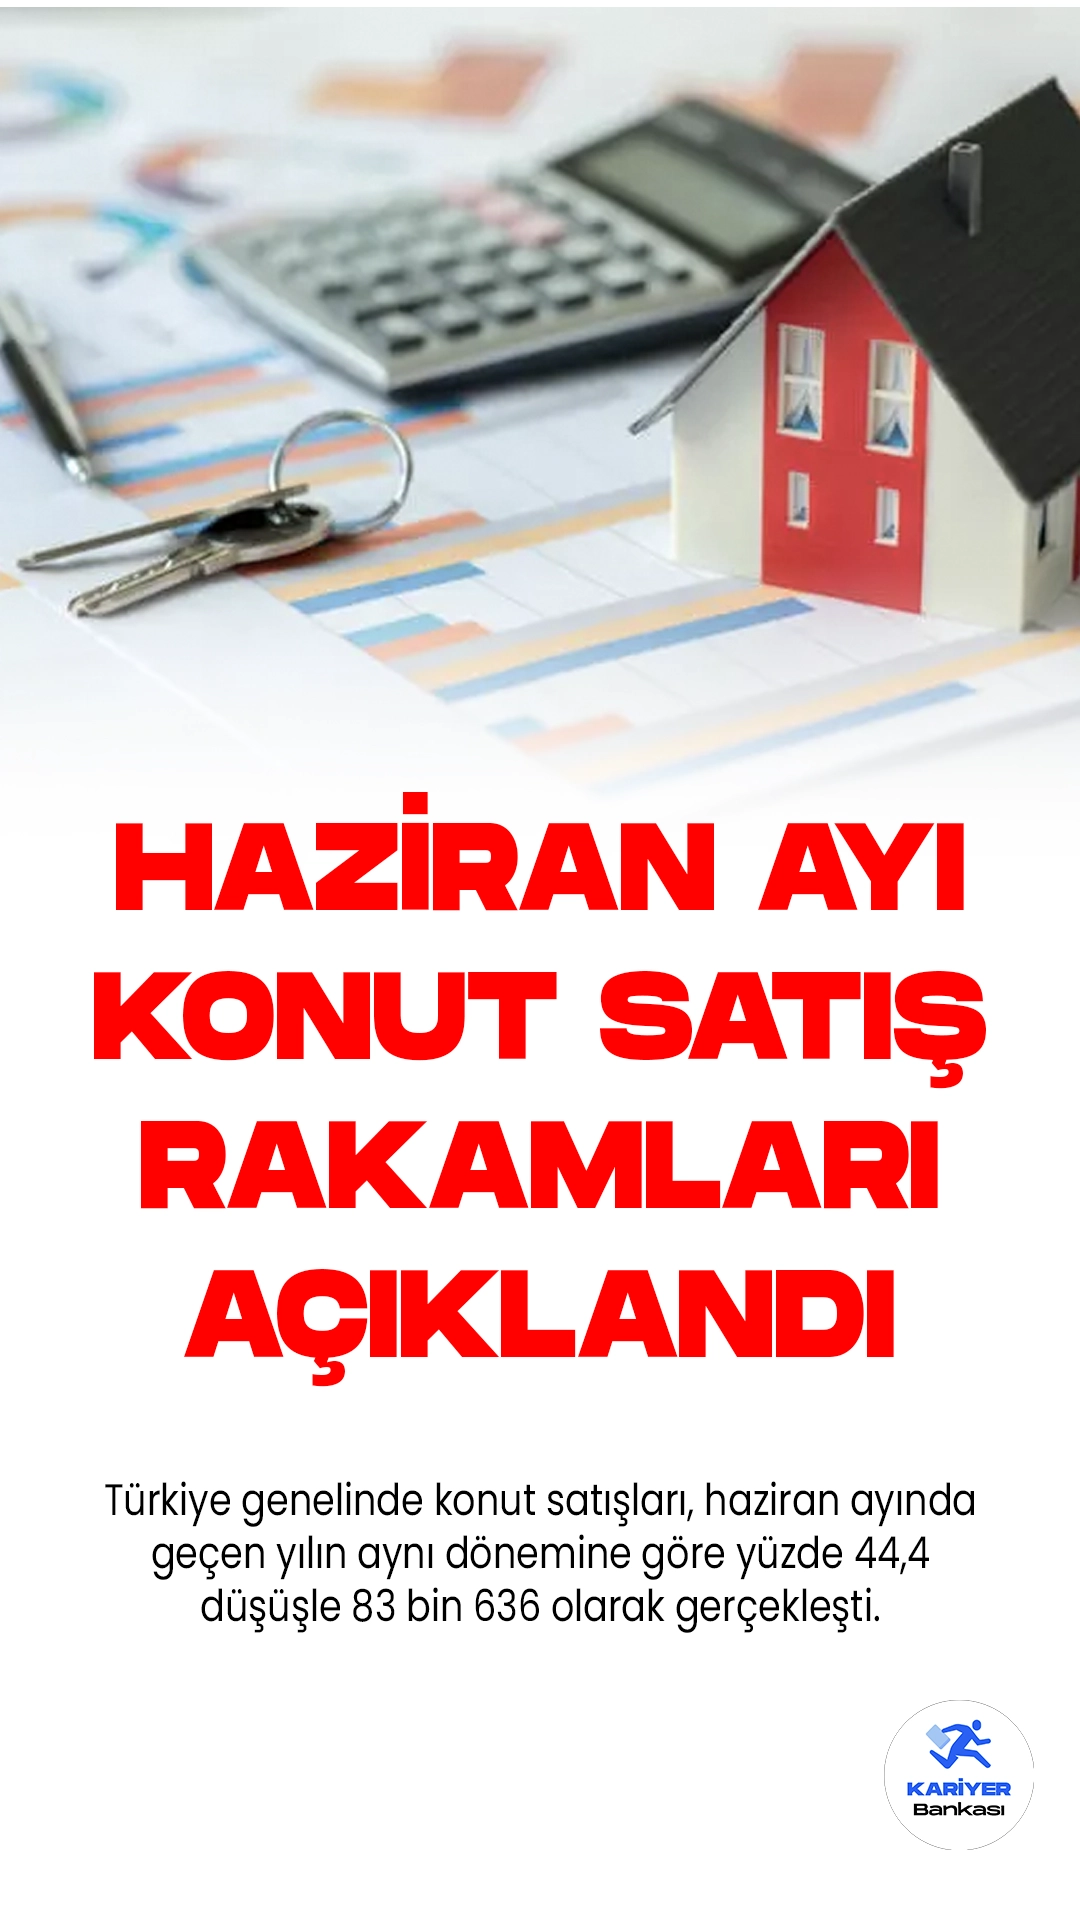 Türkiye'de Konut Satışları Haziranda %44,4 Azaldı.Türkiye genelinde konut satışları, haziran ayında geçen yılın aynı dönemine göre yüzde 44,4 düşüşle 83 bin 636 olarak gerçekleşti. Bu veriler, Türkiye İstatistik Kurumu (TÜİK) tarafından açıklanan konut satış istatistikleriyle ortaya konuldu.